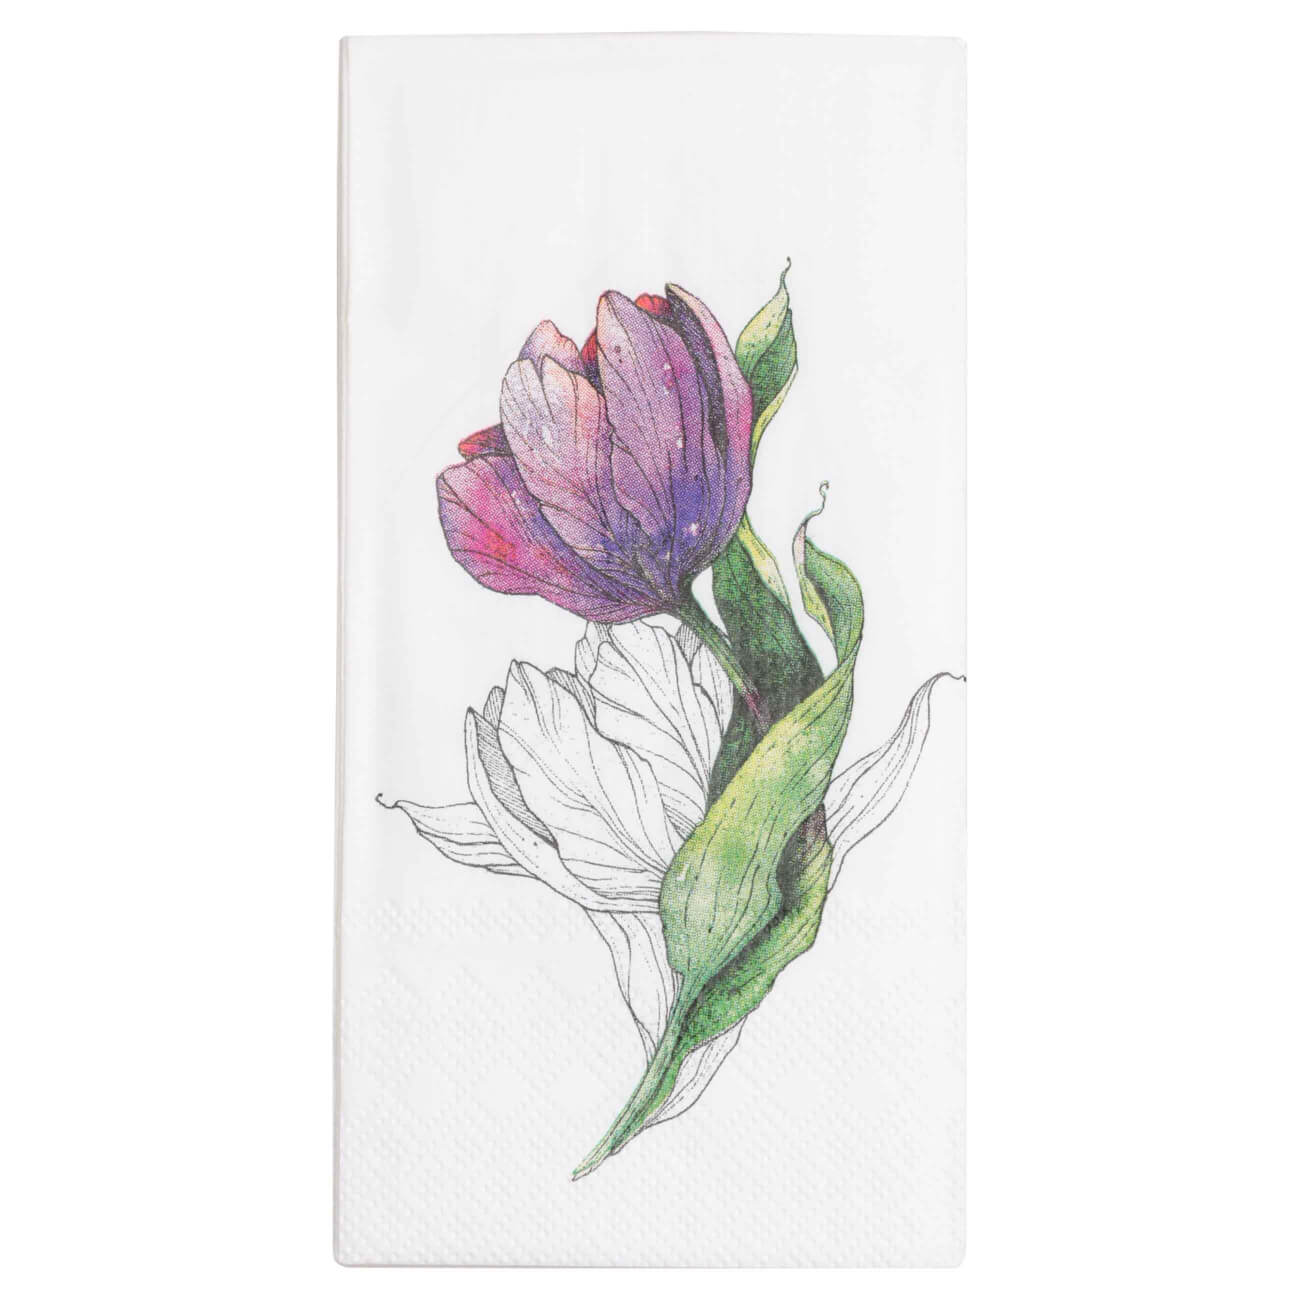 Салфетки бумажные, 33х33 см, 20 шт, прямоугольные, белые, Тюльпан, Tulip garden салфетки бумажные 33х33 см 20 шт прямоугольные белые тюльпан tulip garden